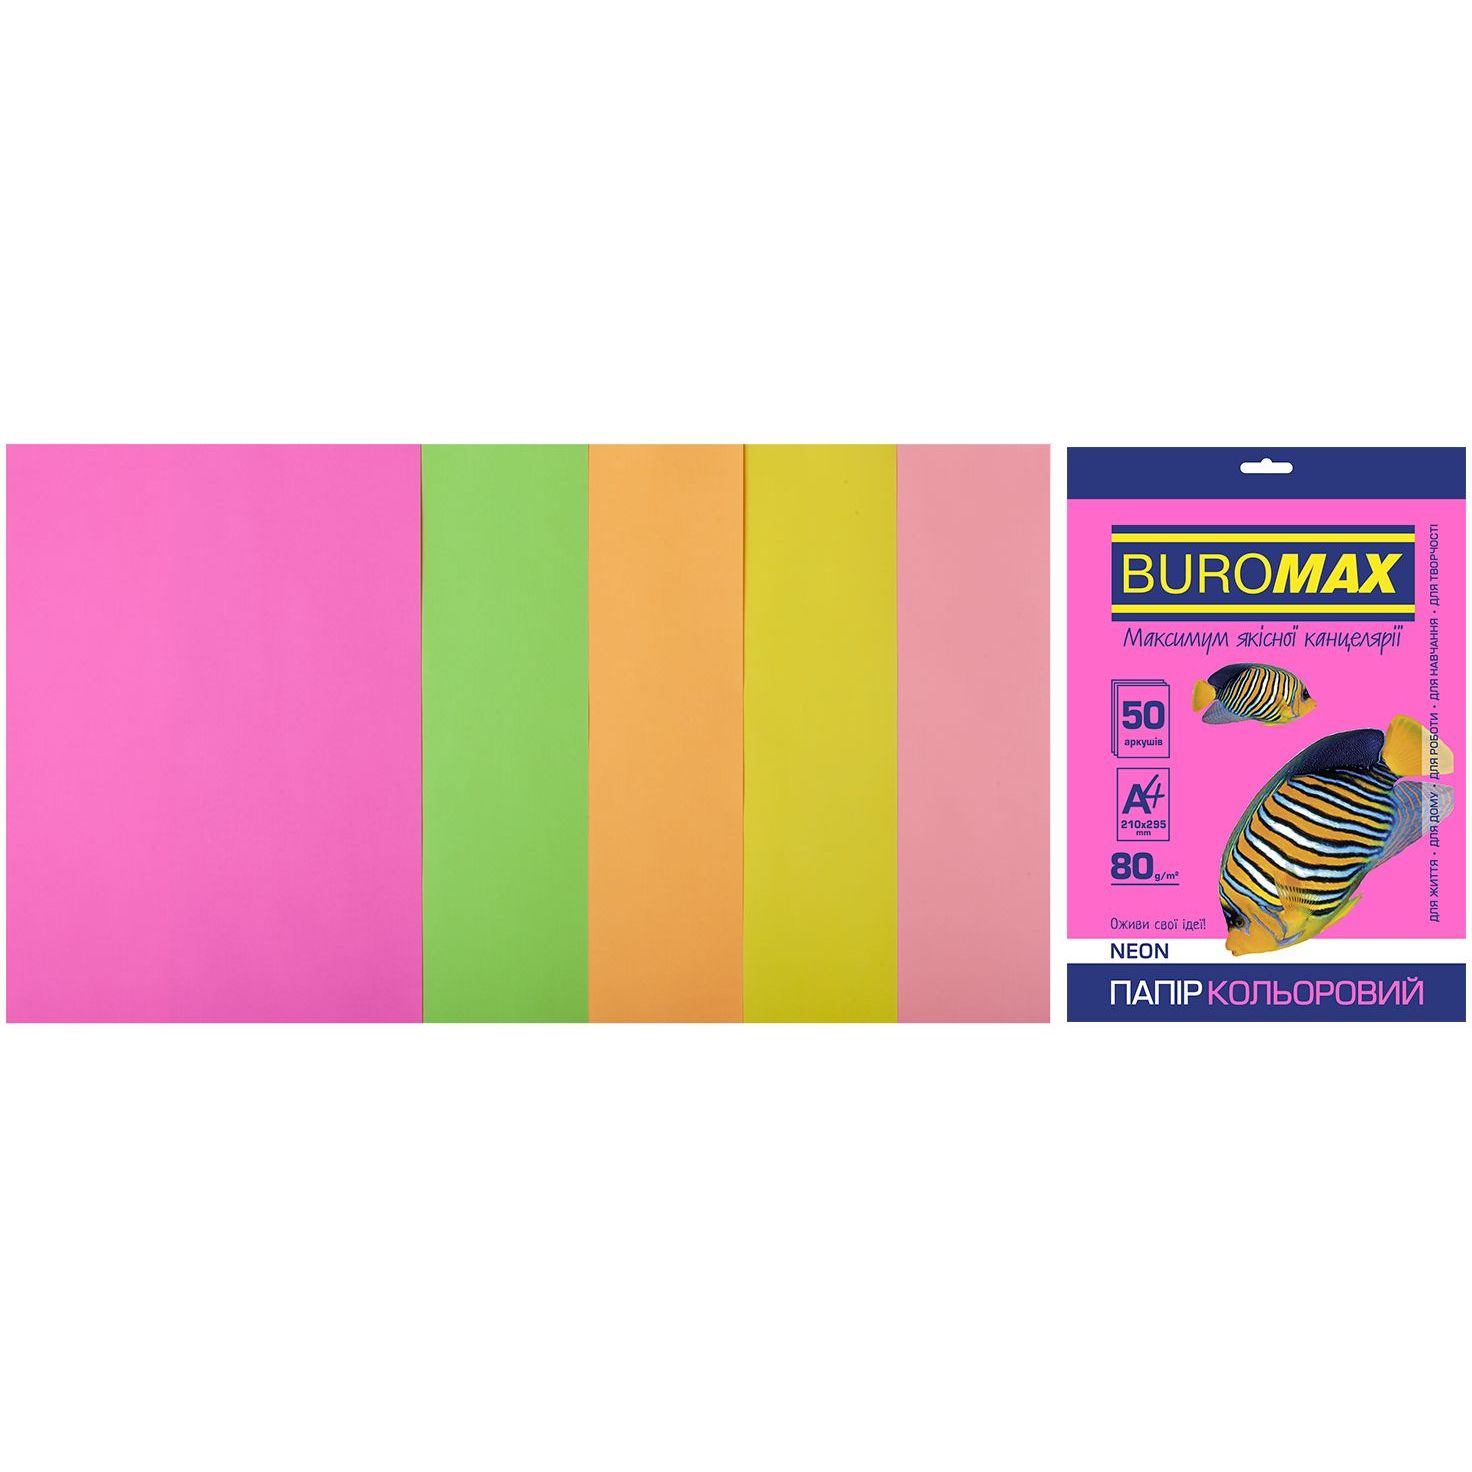 Набор цветной бумаги Buromax Neon А4 50 листов 5 цветов (BM.2721550-99) - фото 1